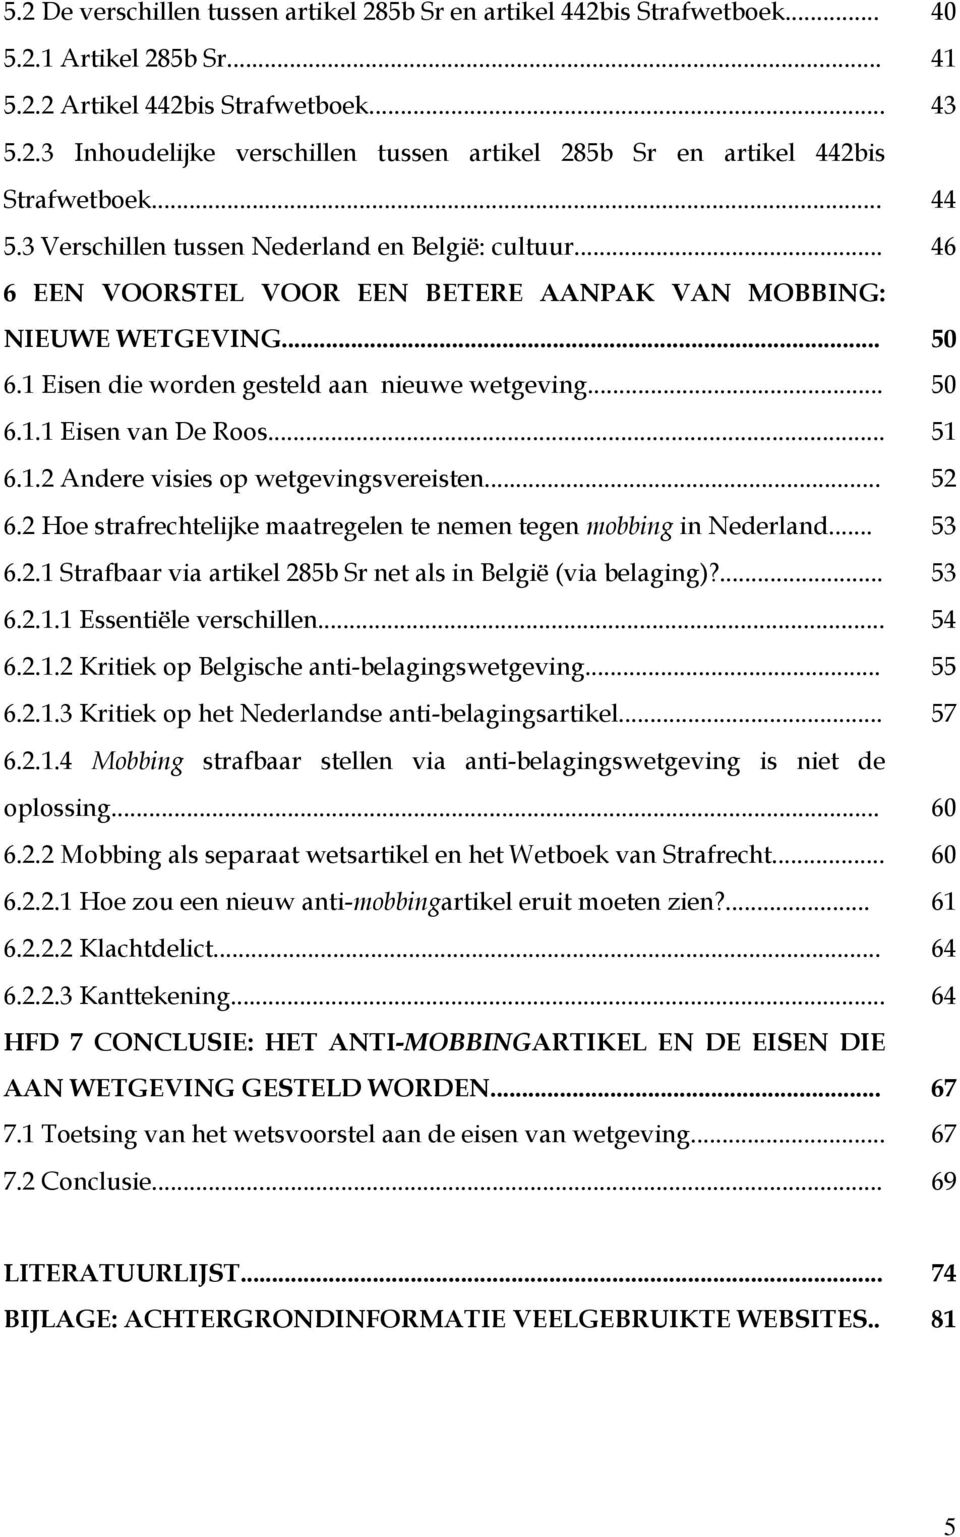 .. 51 6.1.2 Andere visies op wetgevingsvereisten... 52 6.2 Hoe strafrechtelijke maatregelen te nemen tegen mobbing in Nederland... 53 6.2.1 Strafbaar via artikel 285b Sr net als in België (via belaging)?